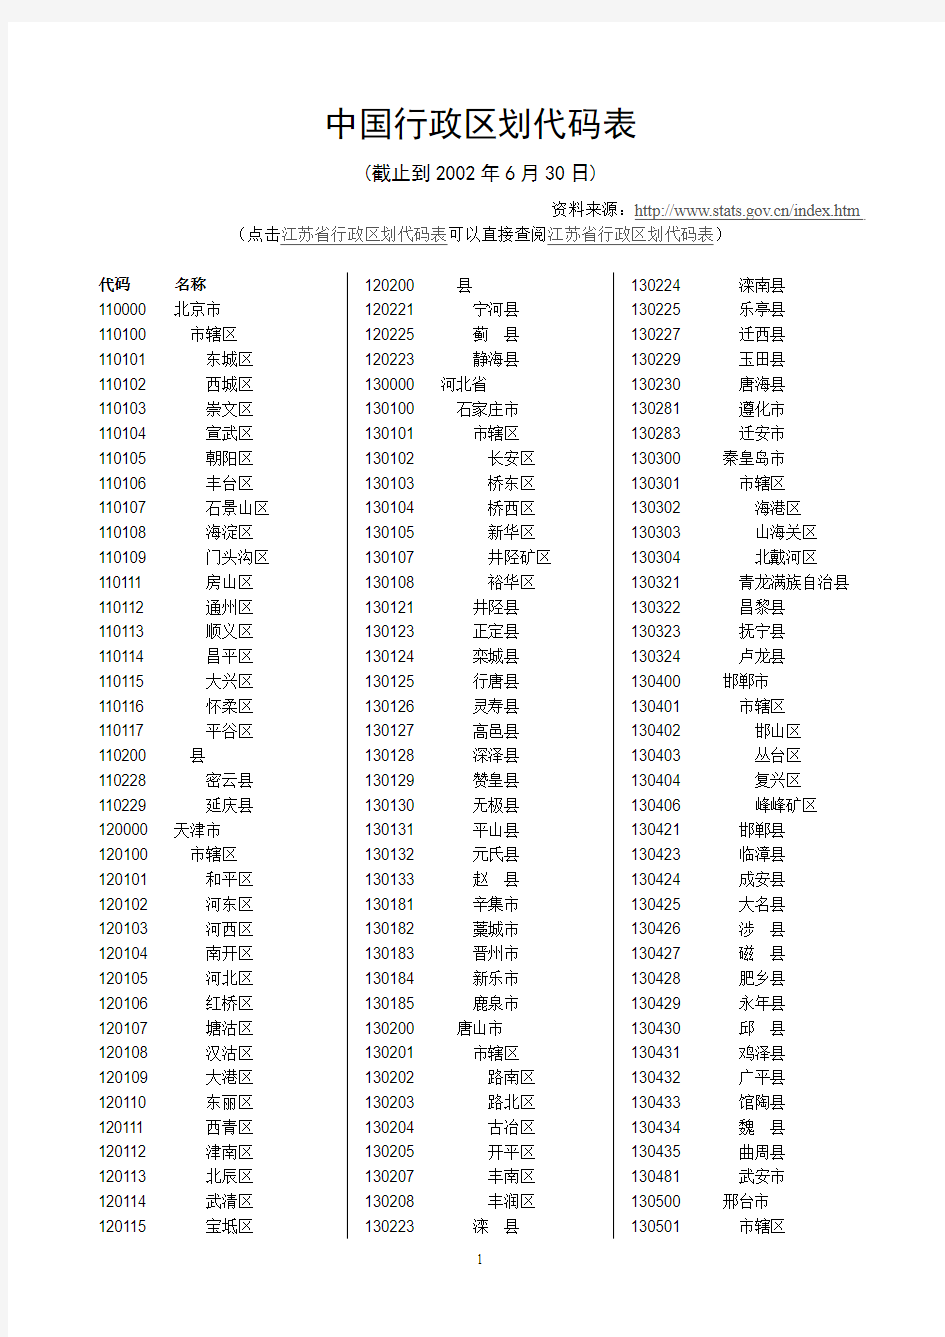 中国行政区划代码表